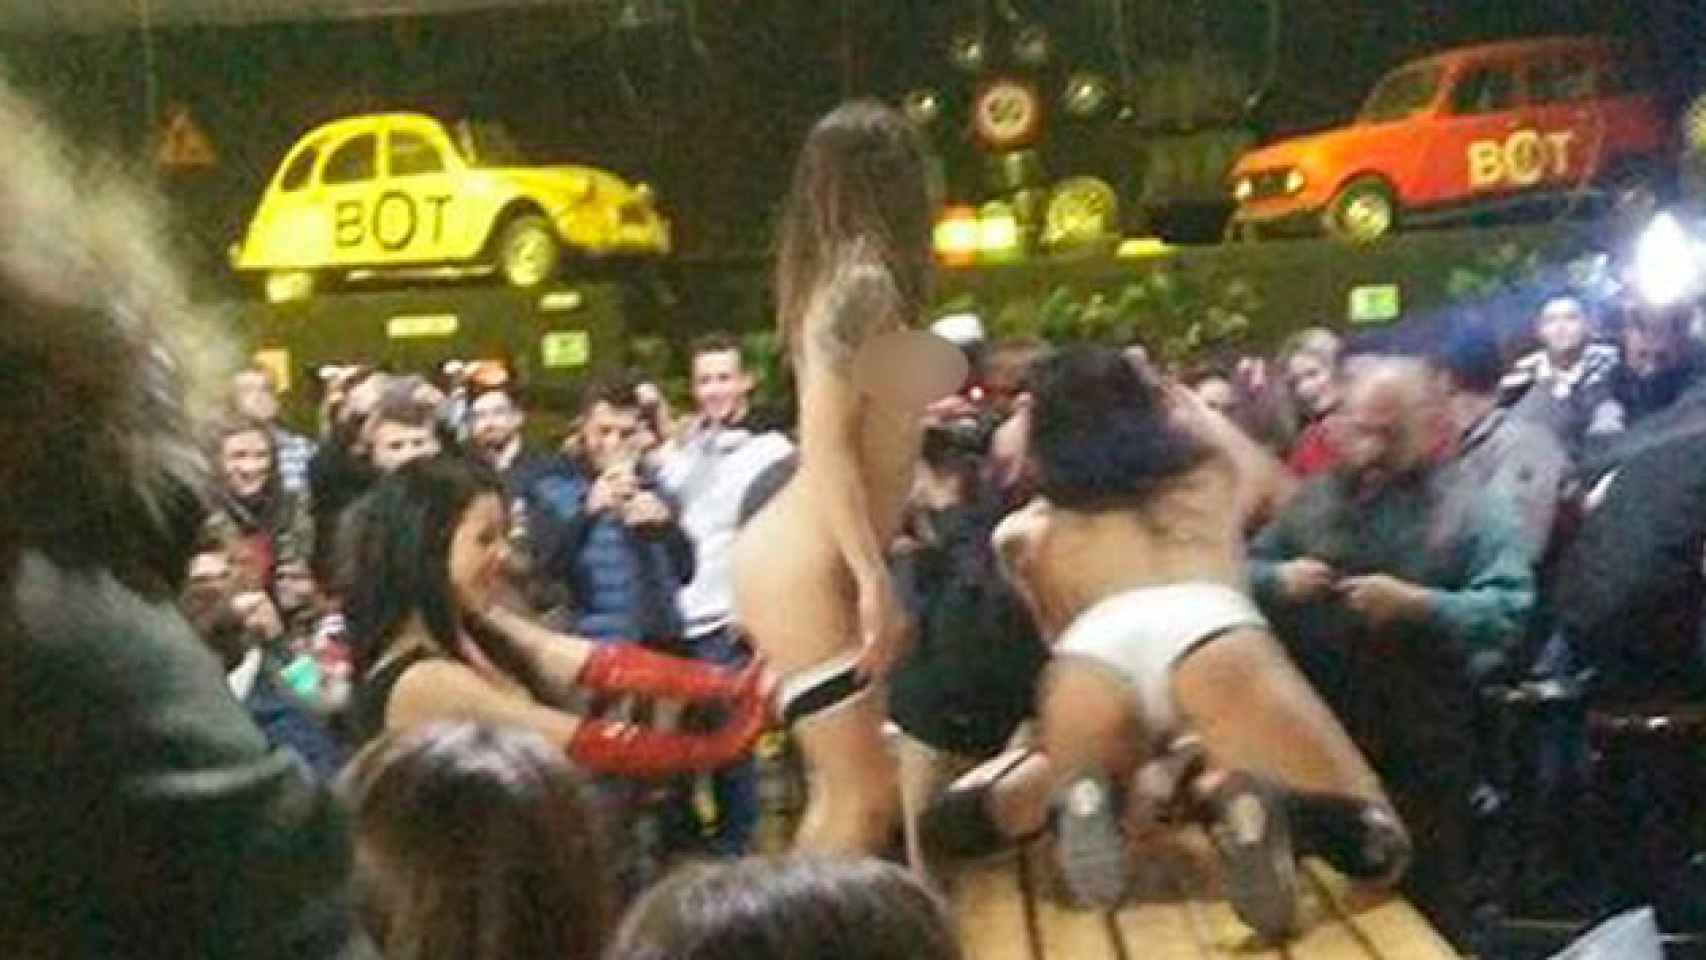 Un momento del acto sexual del sábado en The Bot, en Mataró / CG